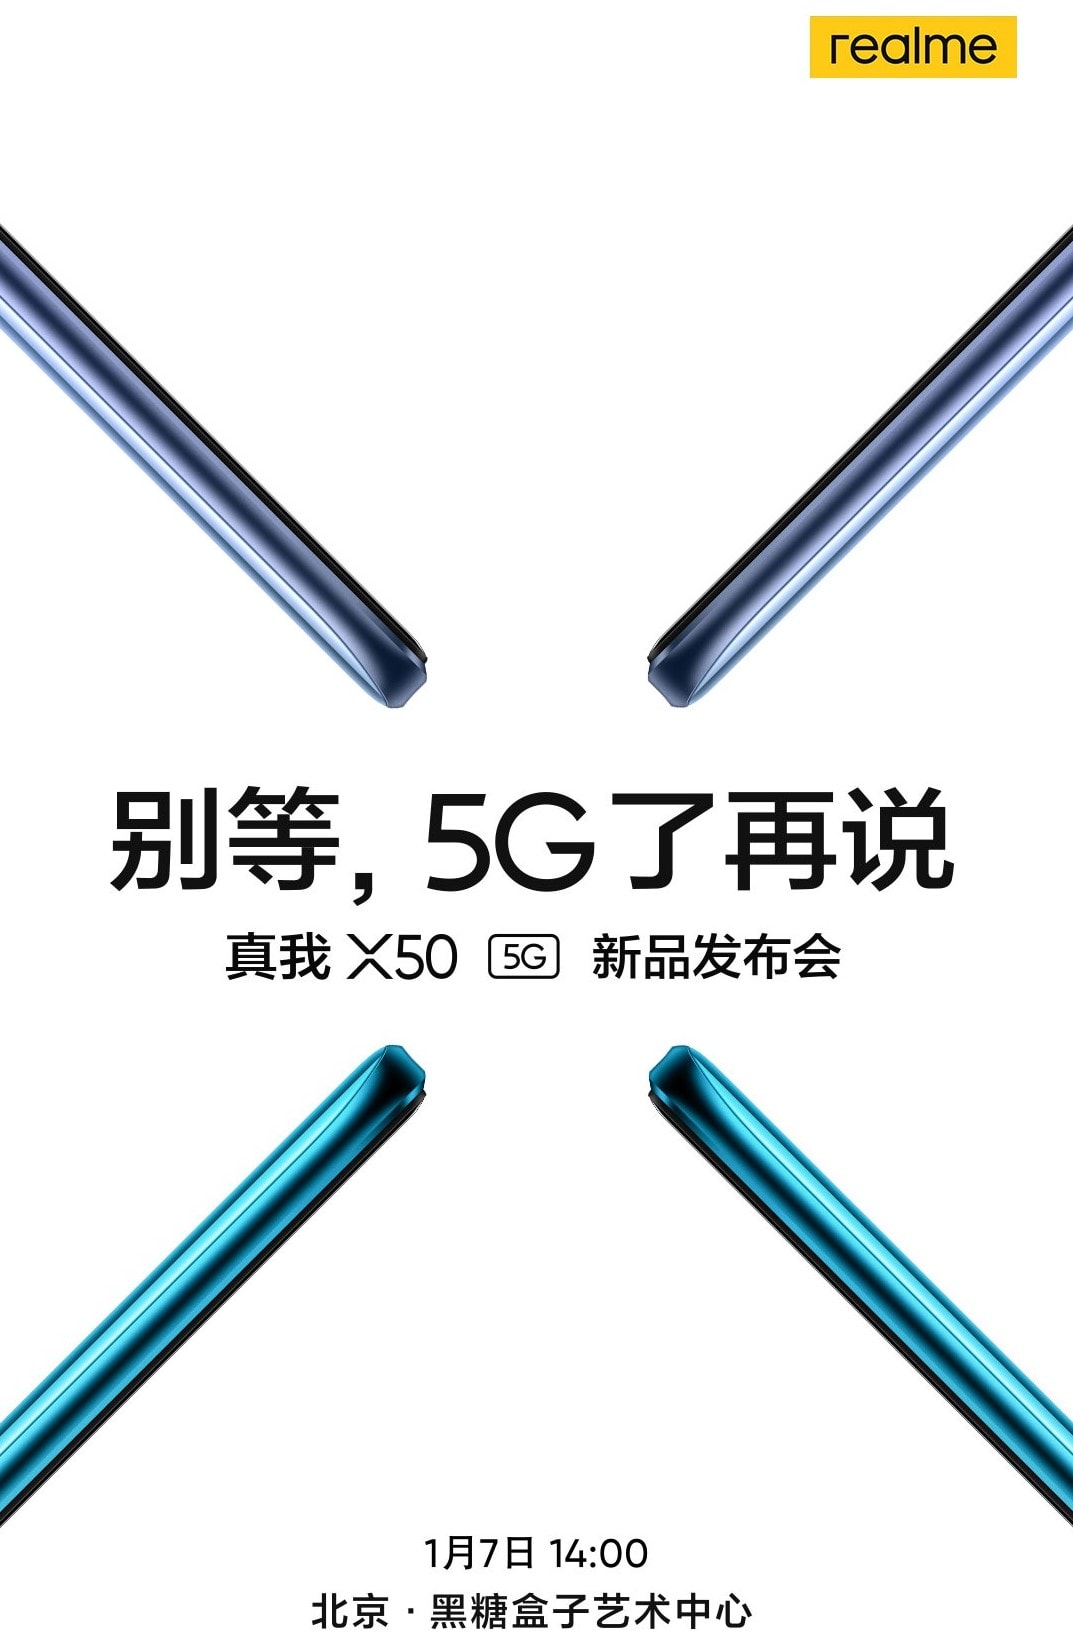 Teaser officiel du Realme X50 5G révélant sa date de présentation.